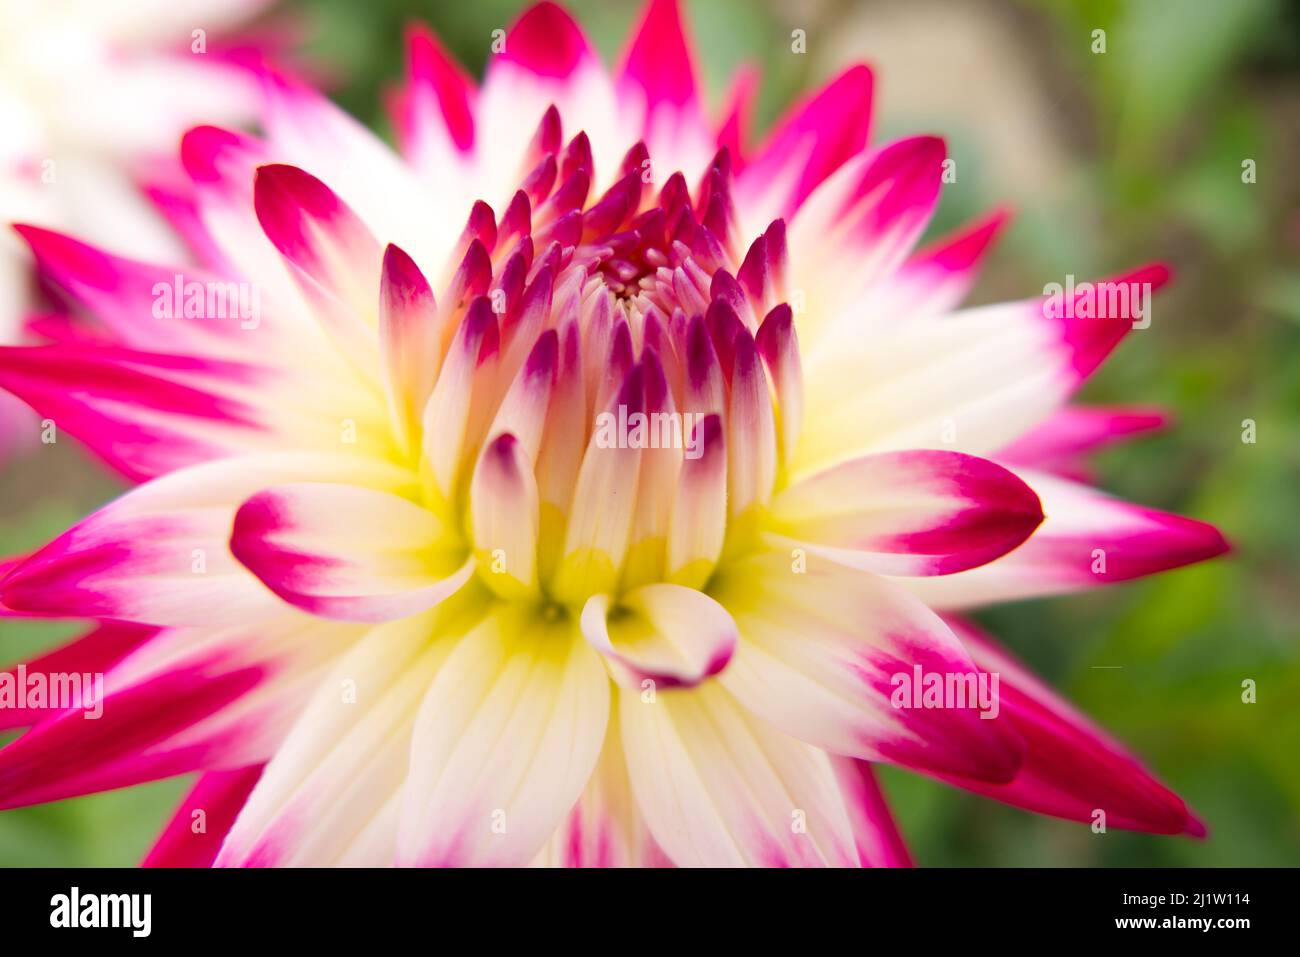 Nahaufnahme der cremefarbenen und rosa-violetten Blume des Halbkaktus Dahlia Match. Konzentrieren Sie sich auf das Zentrum. Kurze Schärfentiefe, sodass die äußeren Blütenblätter verschwommen sind. Stockfoto